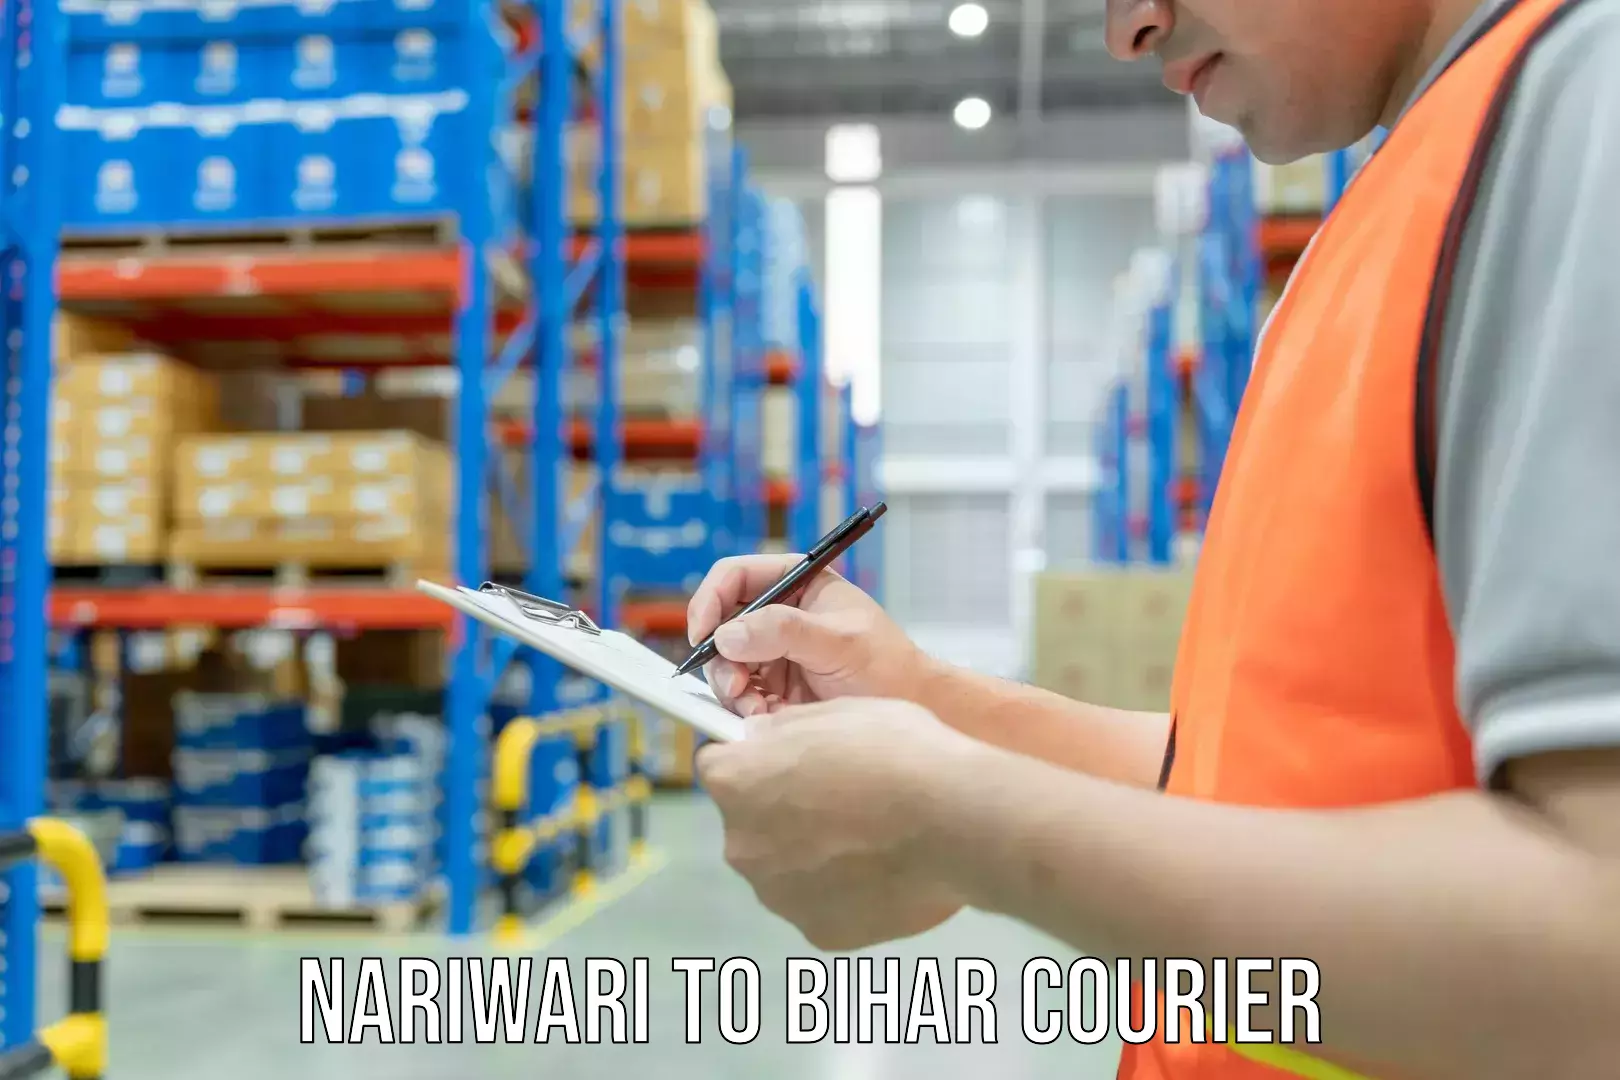 Furniture moving experts Nariwari to Bihar